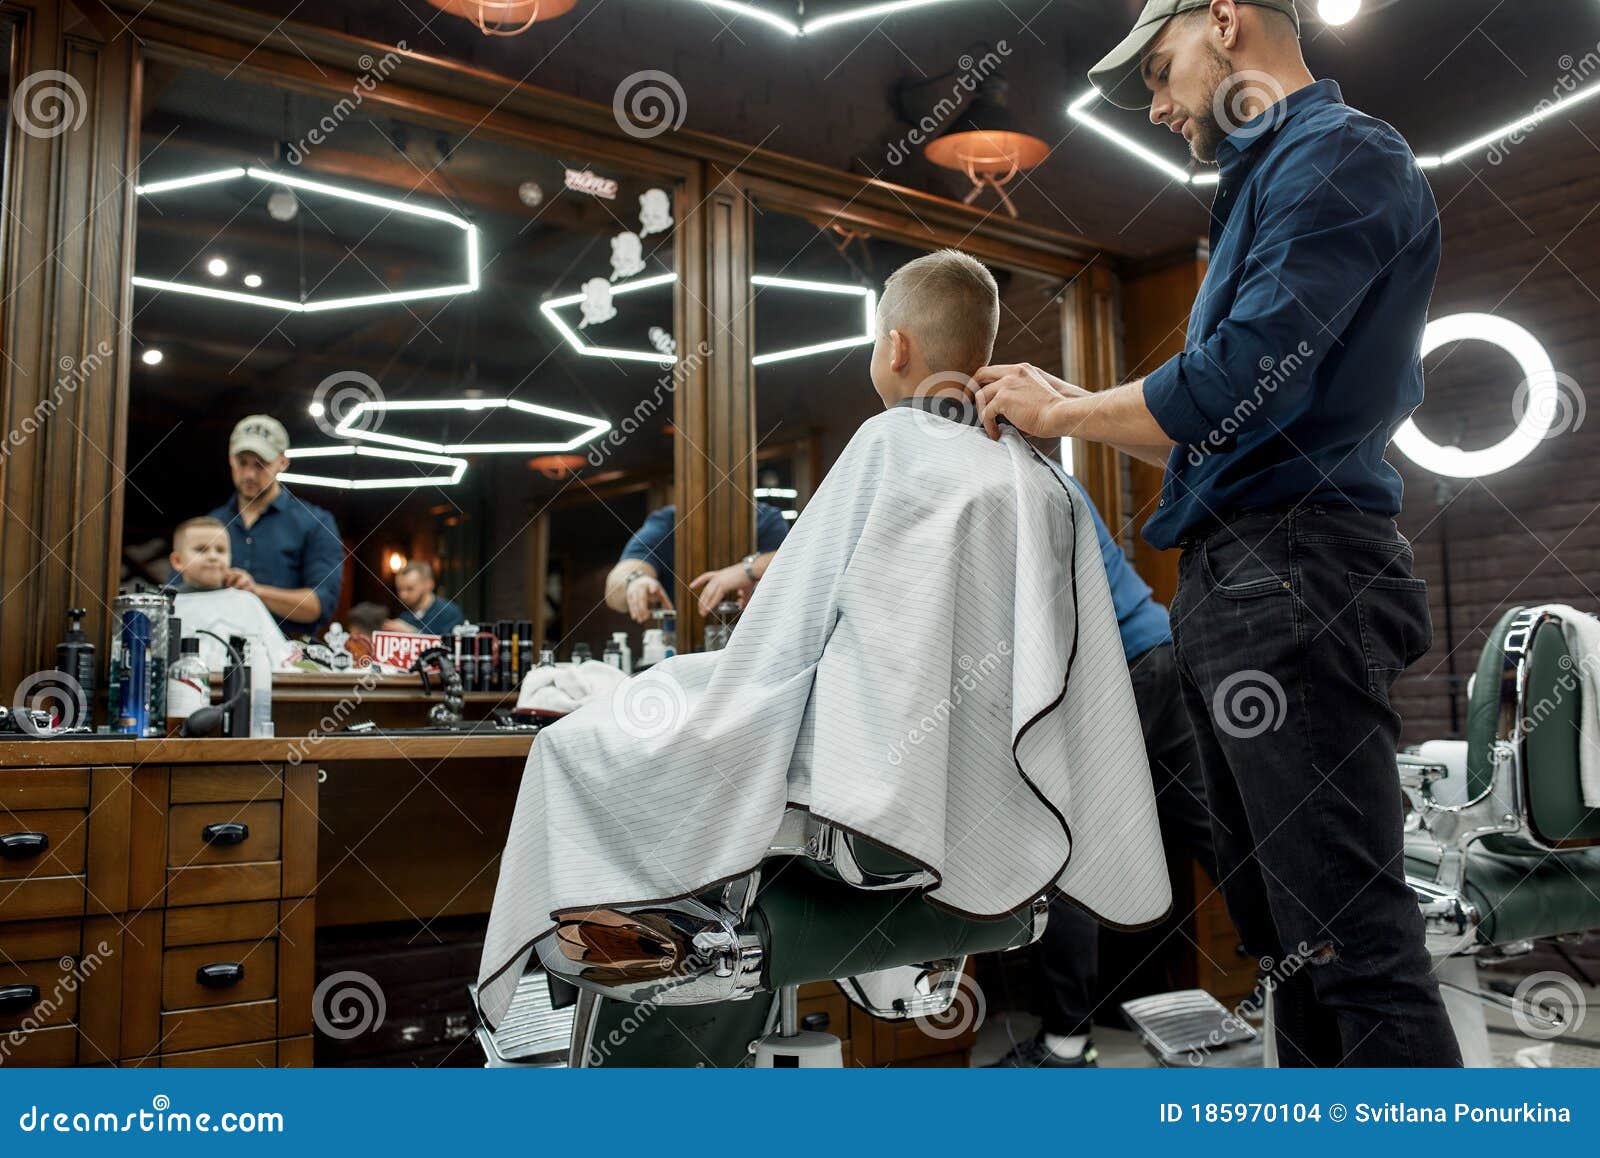 理发店发型男士图片大全-理发店发型男士高清图片下载-觅知网